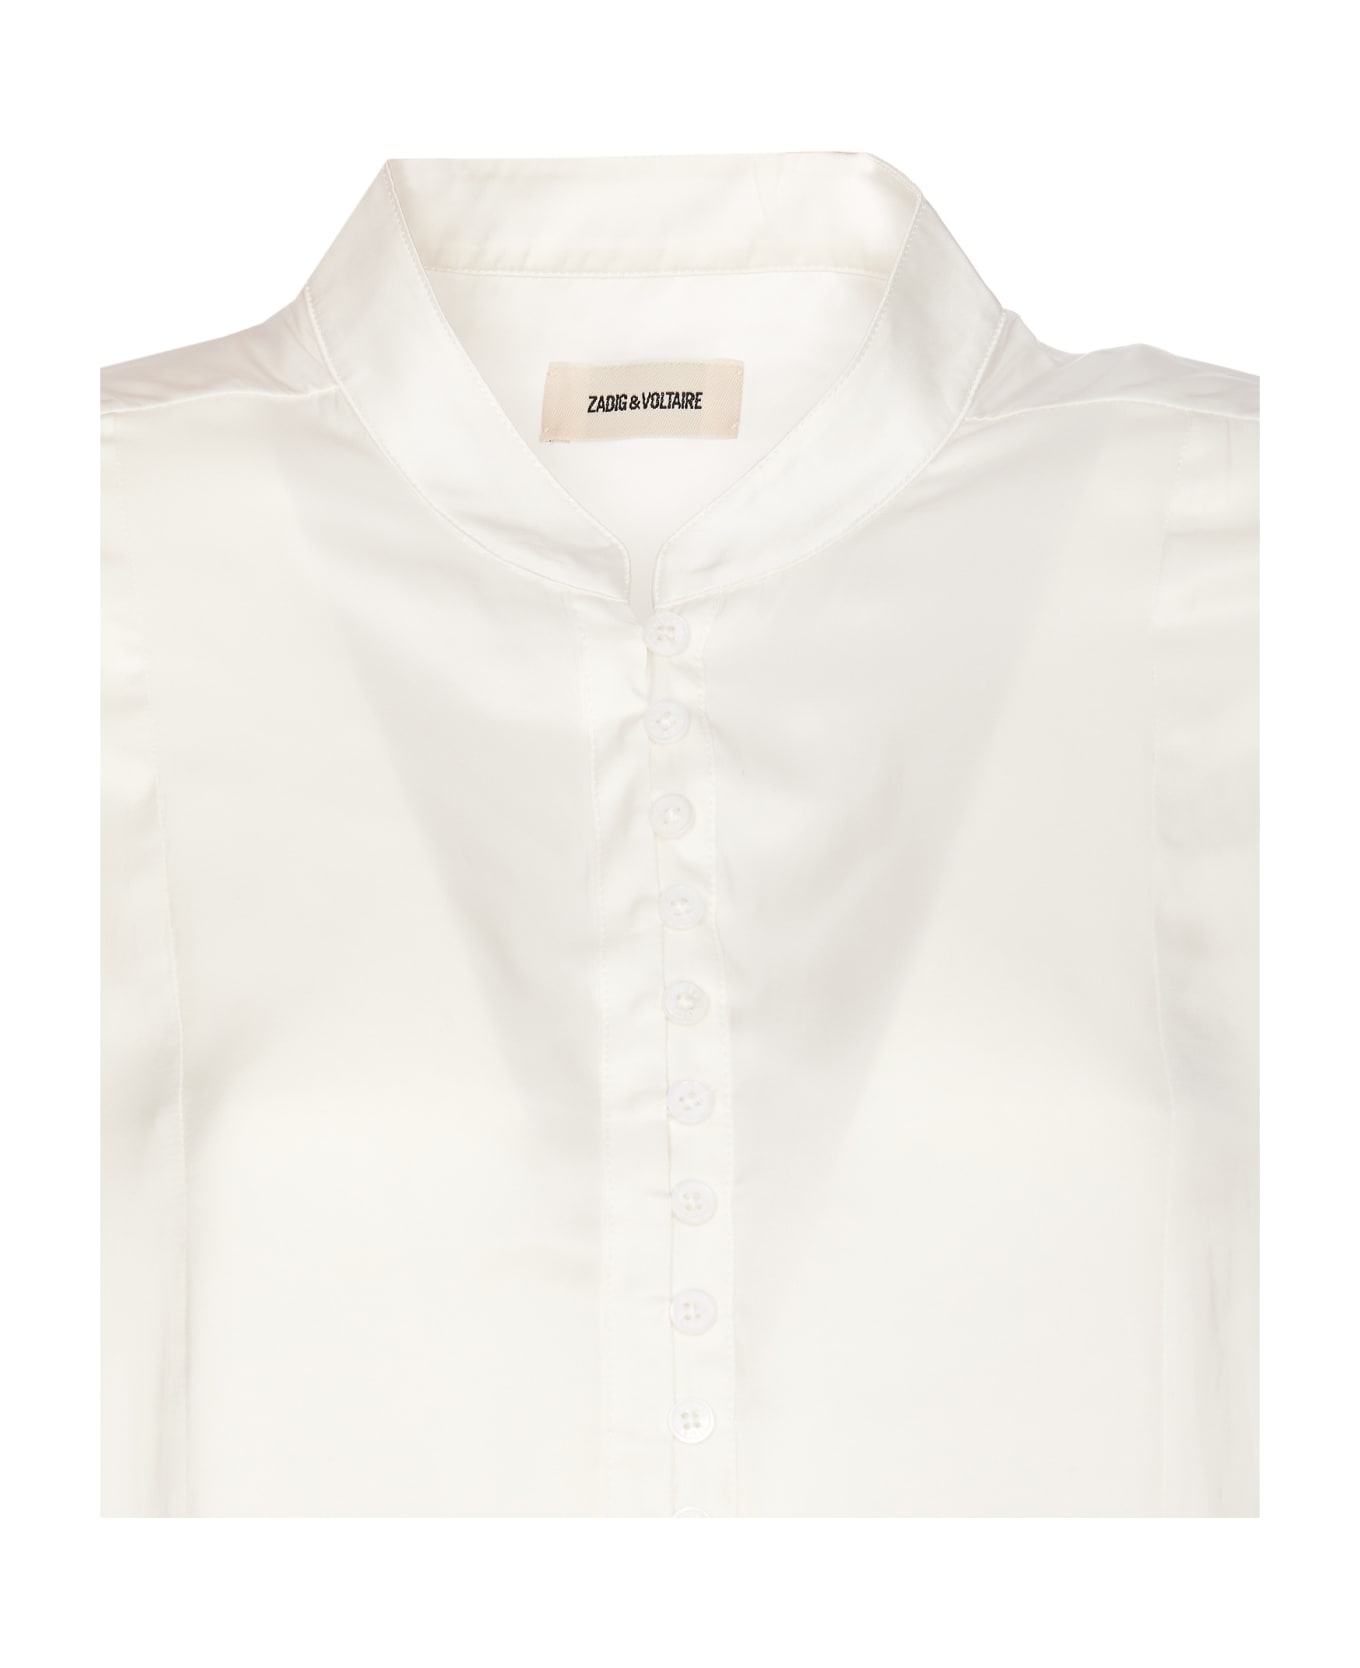 Zadig & Voltaire Twina Satin Shirt - White